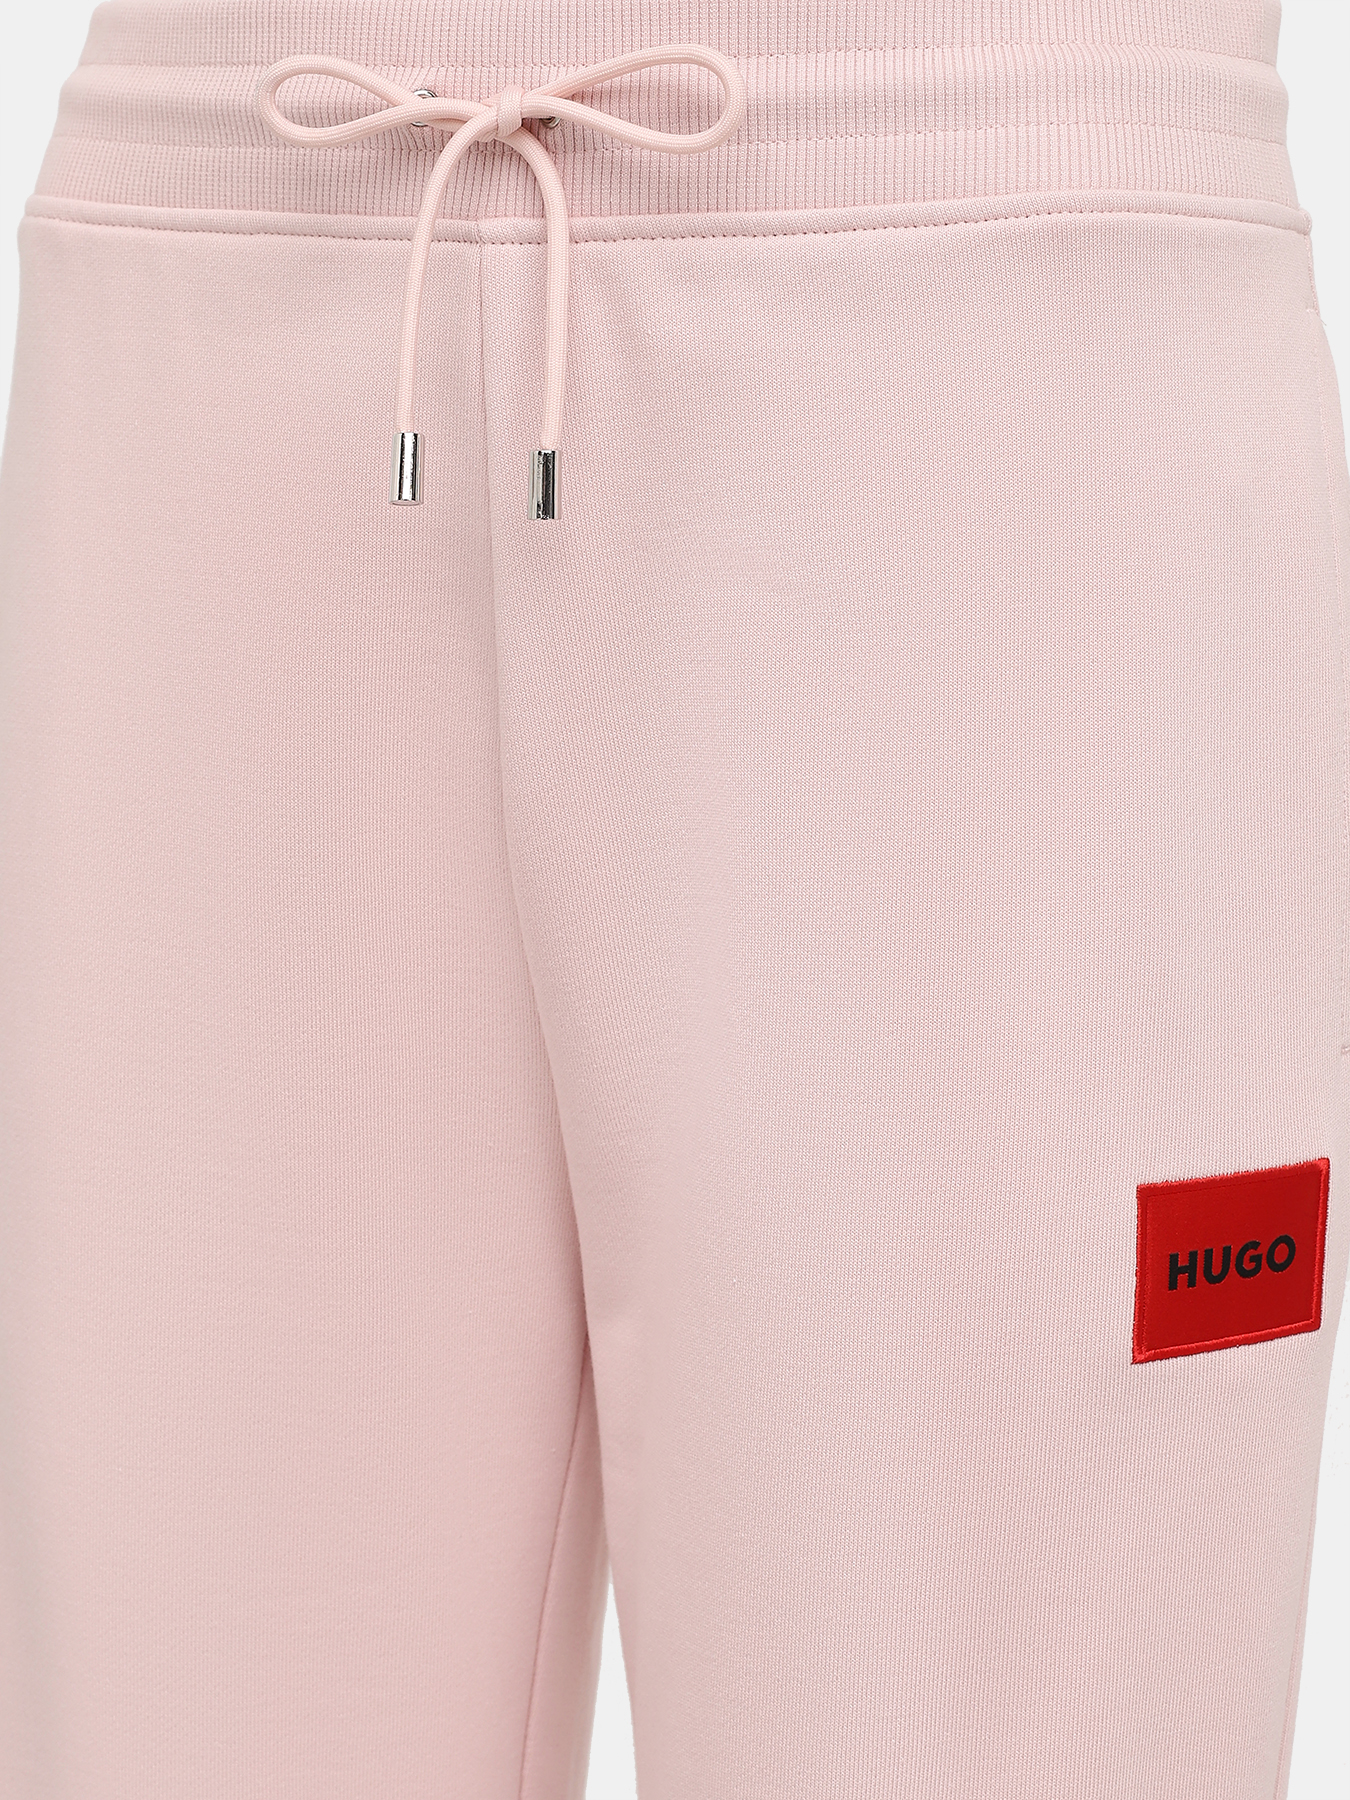 Спортивные брюки Dachibi redlabel HUGO 420594-042, цвет розовый, размер 42-44 - фото 2